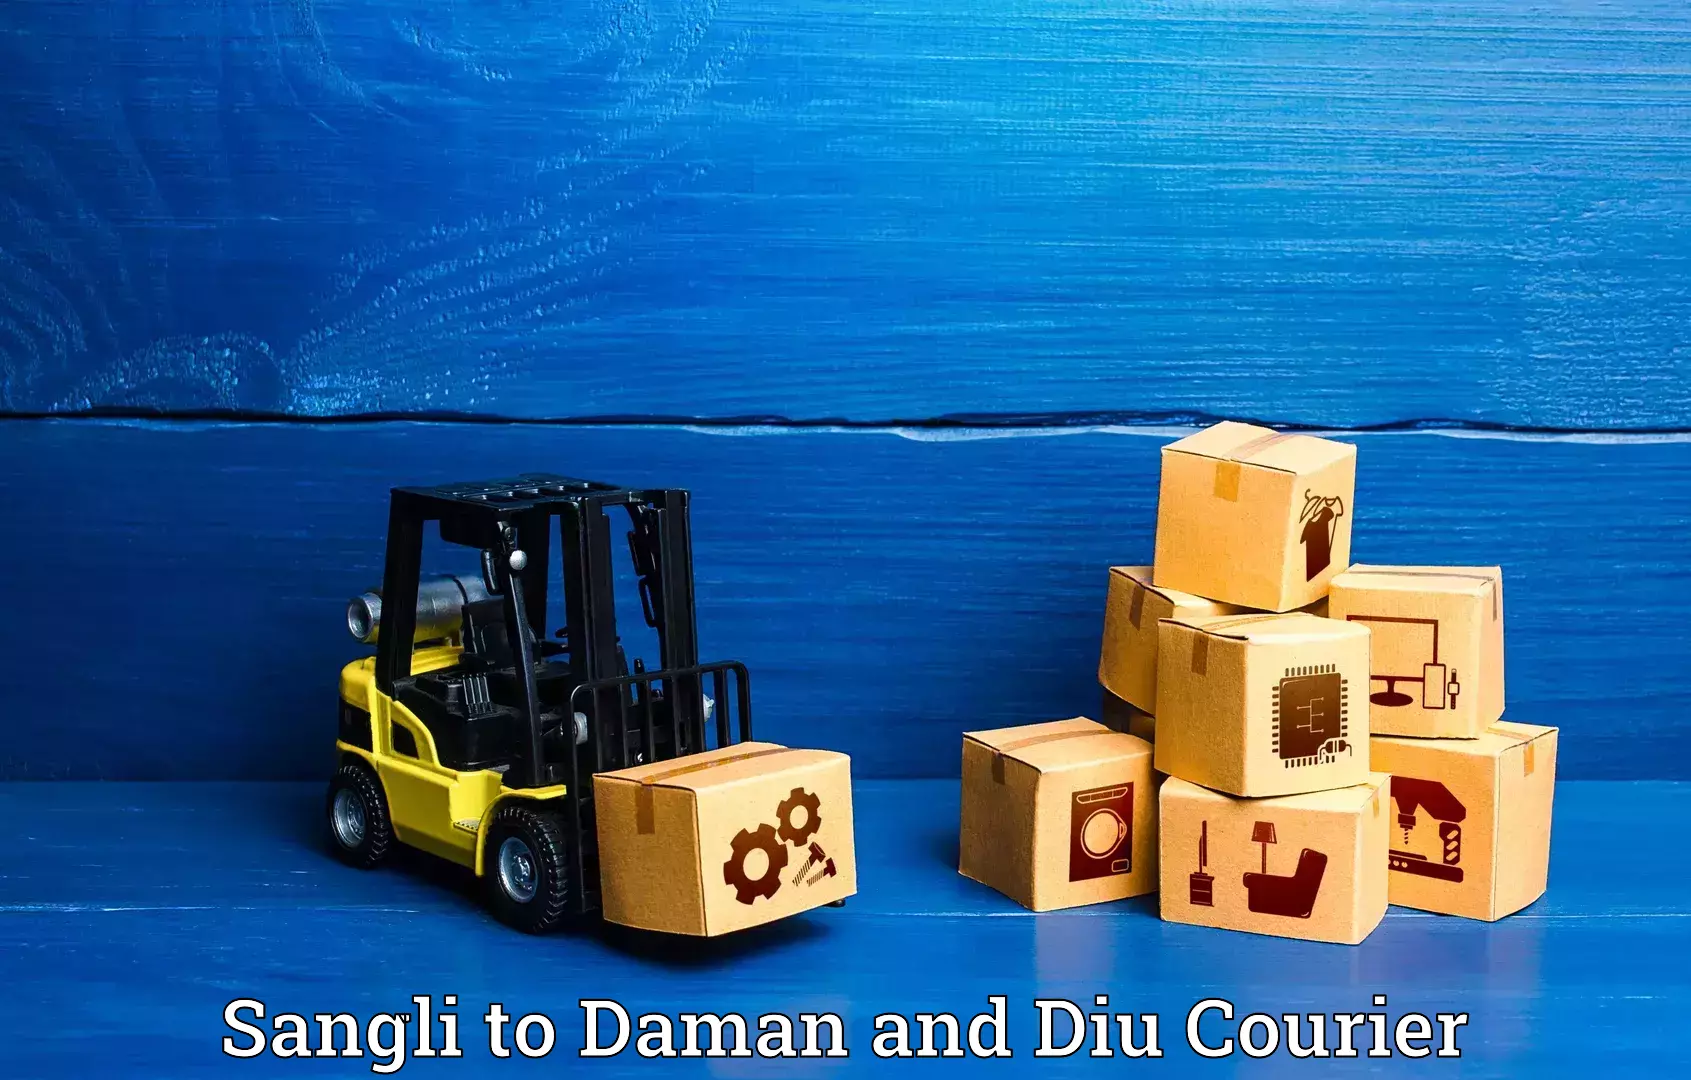 Luggage shipment tracking in Sangli to Diu